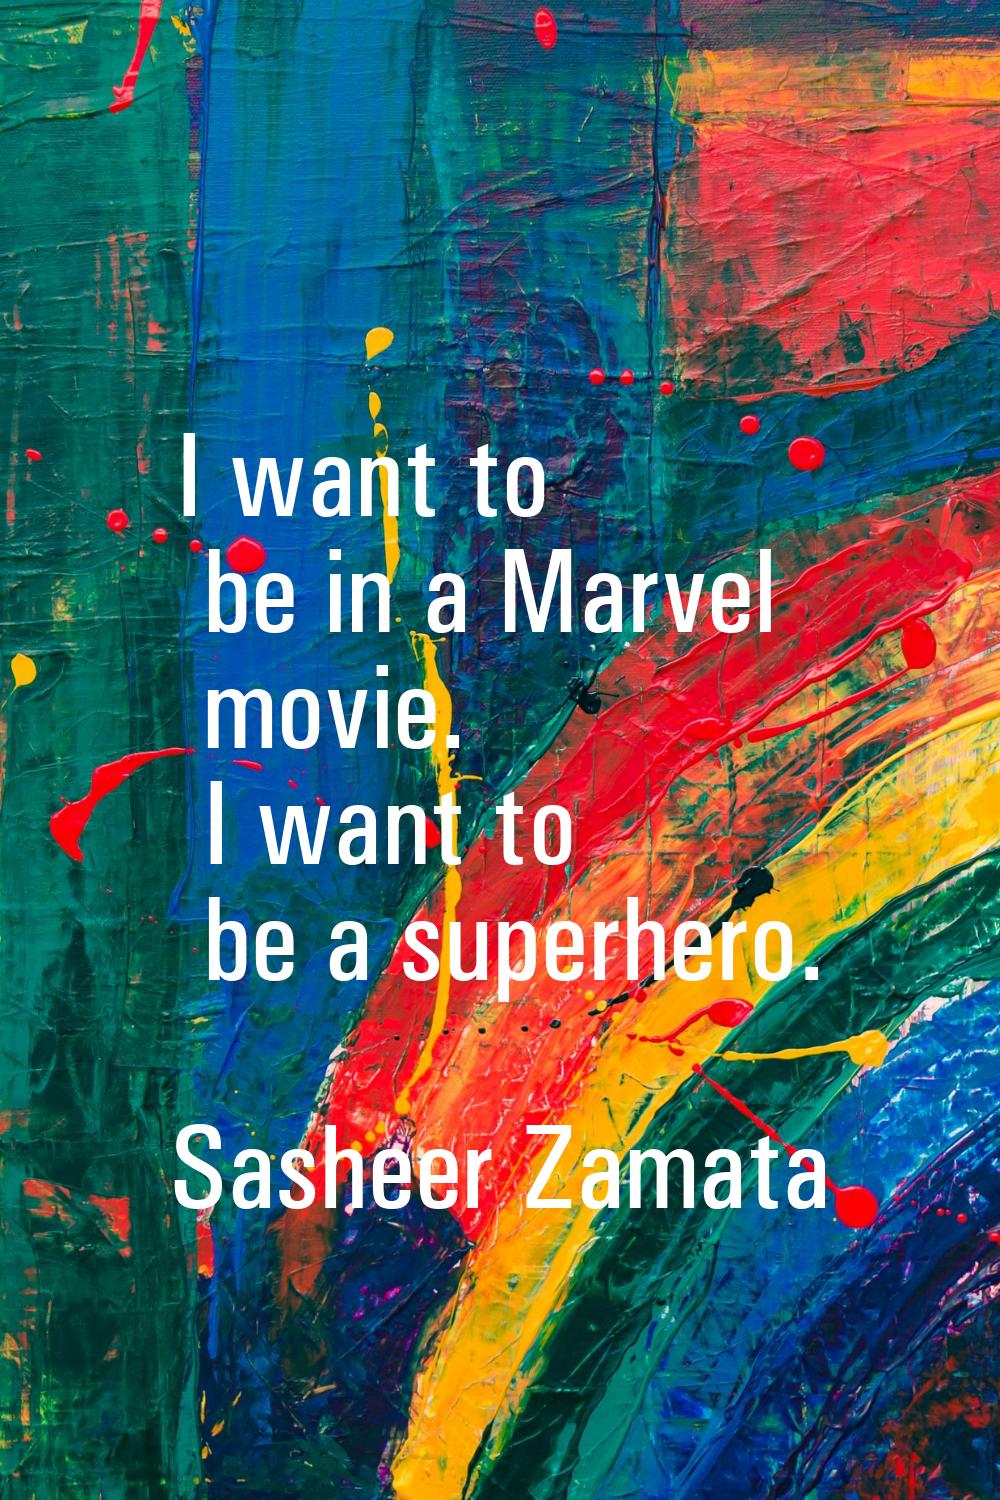 I want to be in a Marvel movie. I want to be a superhero.